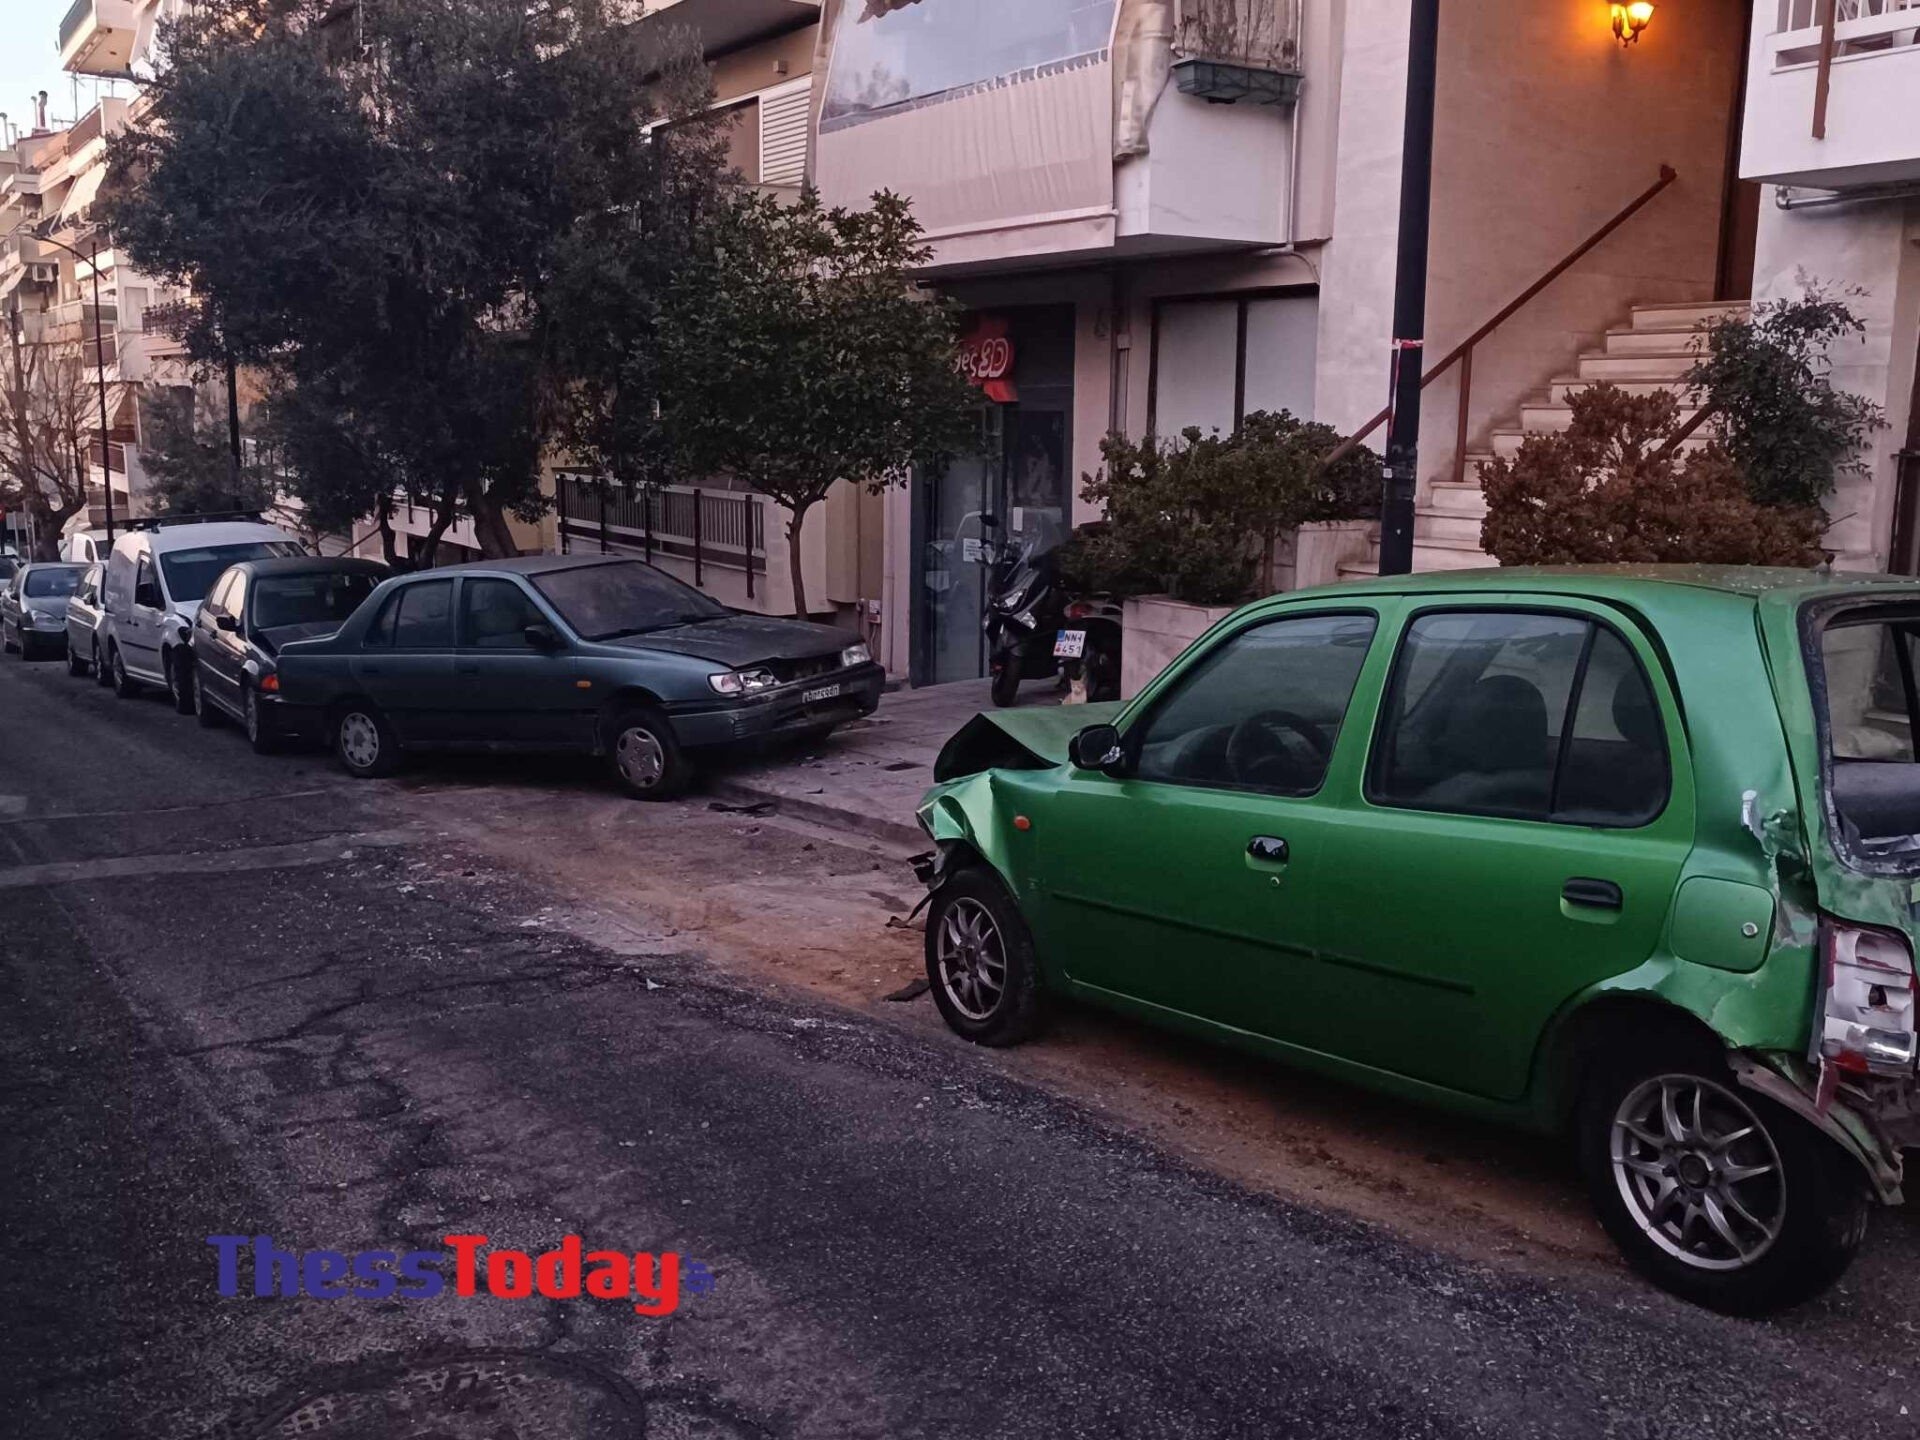 Θεσσαλονίκη: Οδηγός λεωφορείου έχασε τον έλεγχο και παρέσυρε πέντε αυτοκίνητα